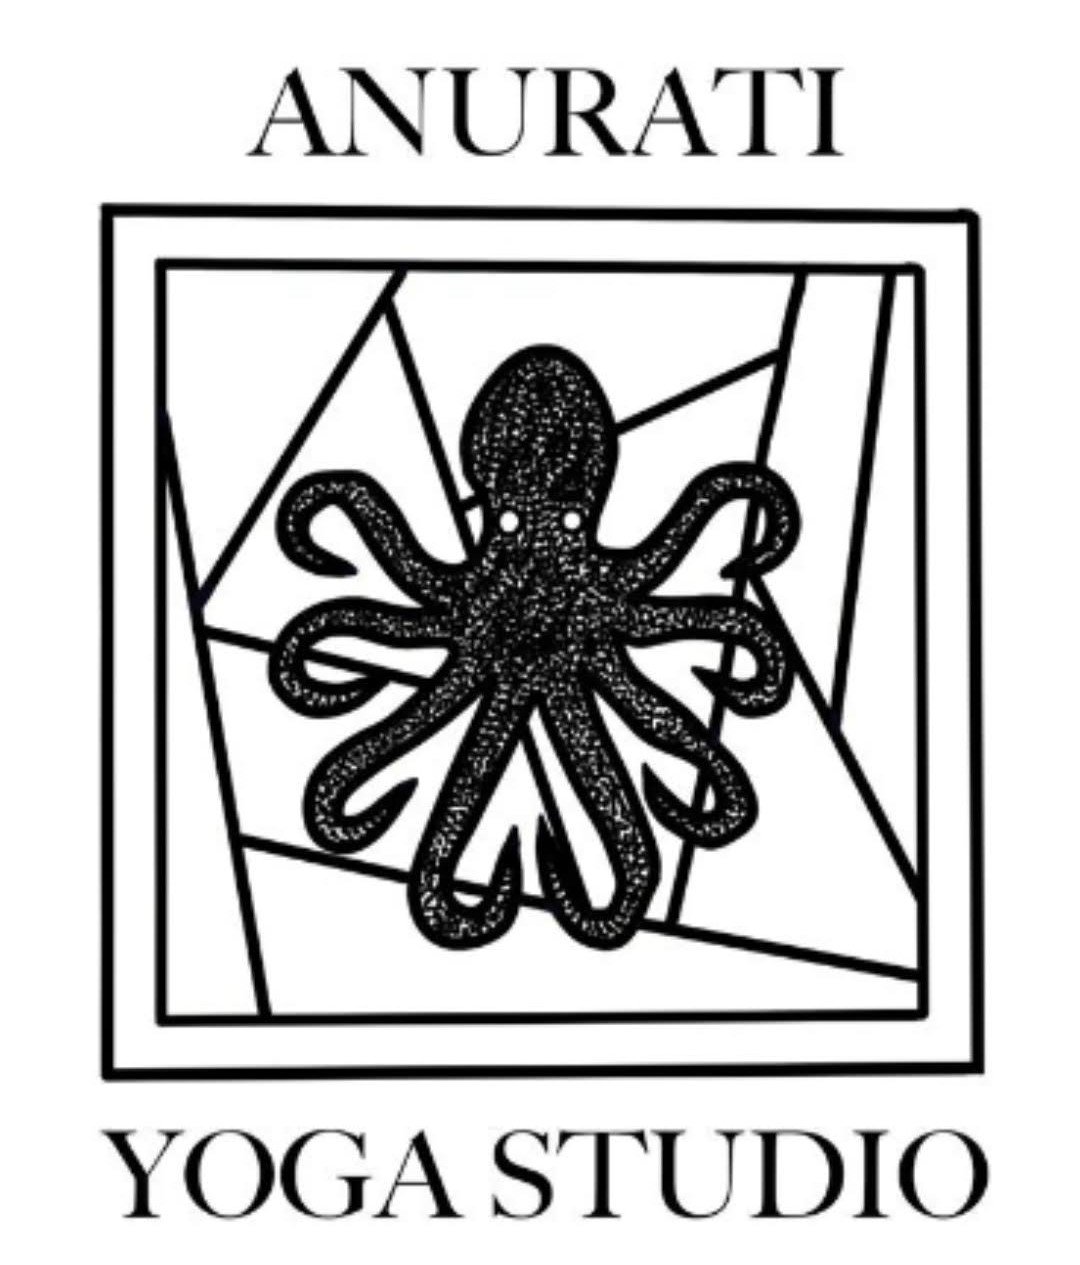 Anurati Yoga Studio